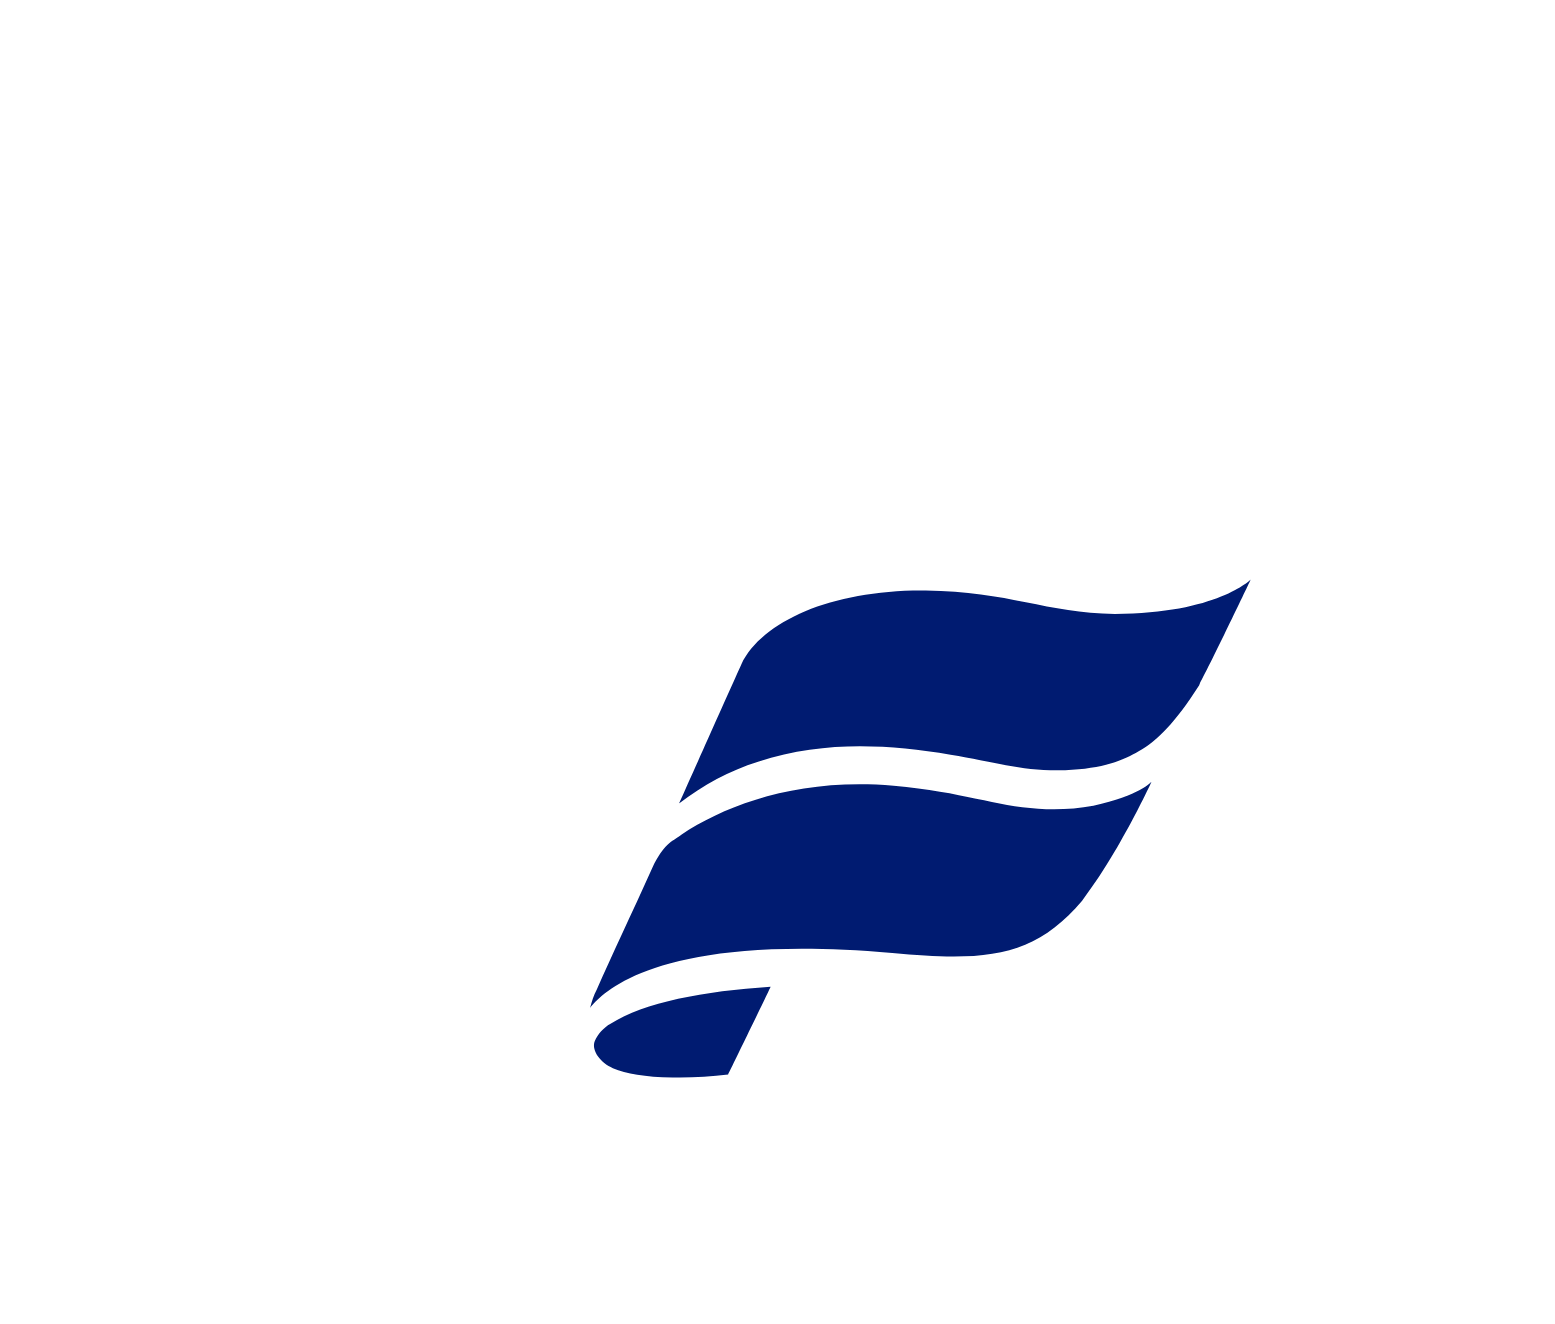 Icelandair logo pour fonds sombres (PNG transparent)